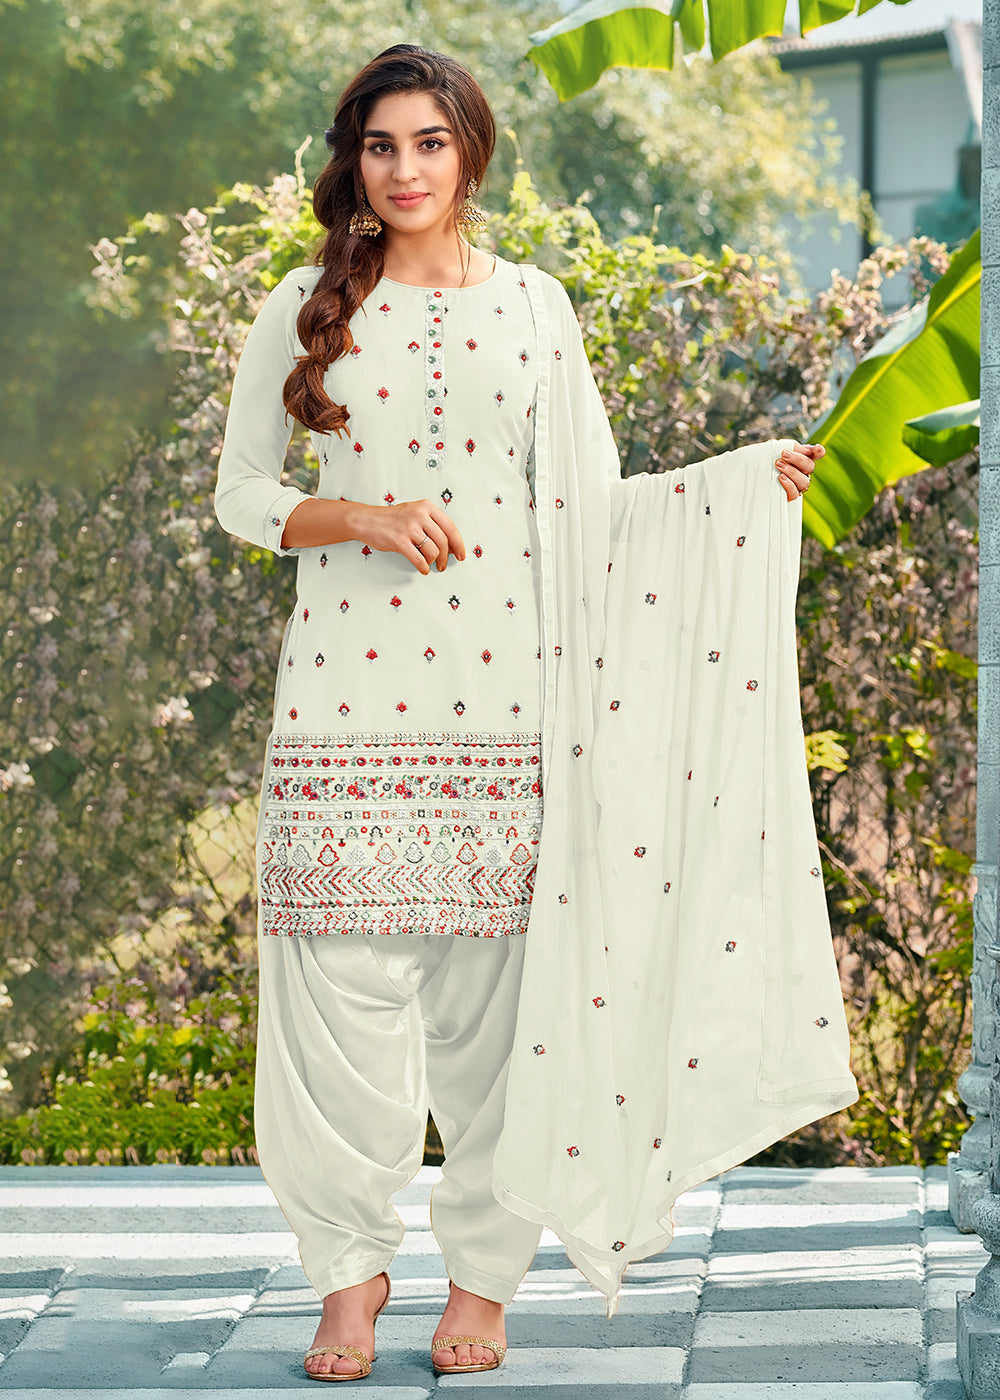 Classy Silver Cotton Punjabi Suit With Purple Dupatta 5H400736 | Indian  dresses online, Patiala suit designs, Patiala salwar